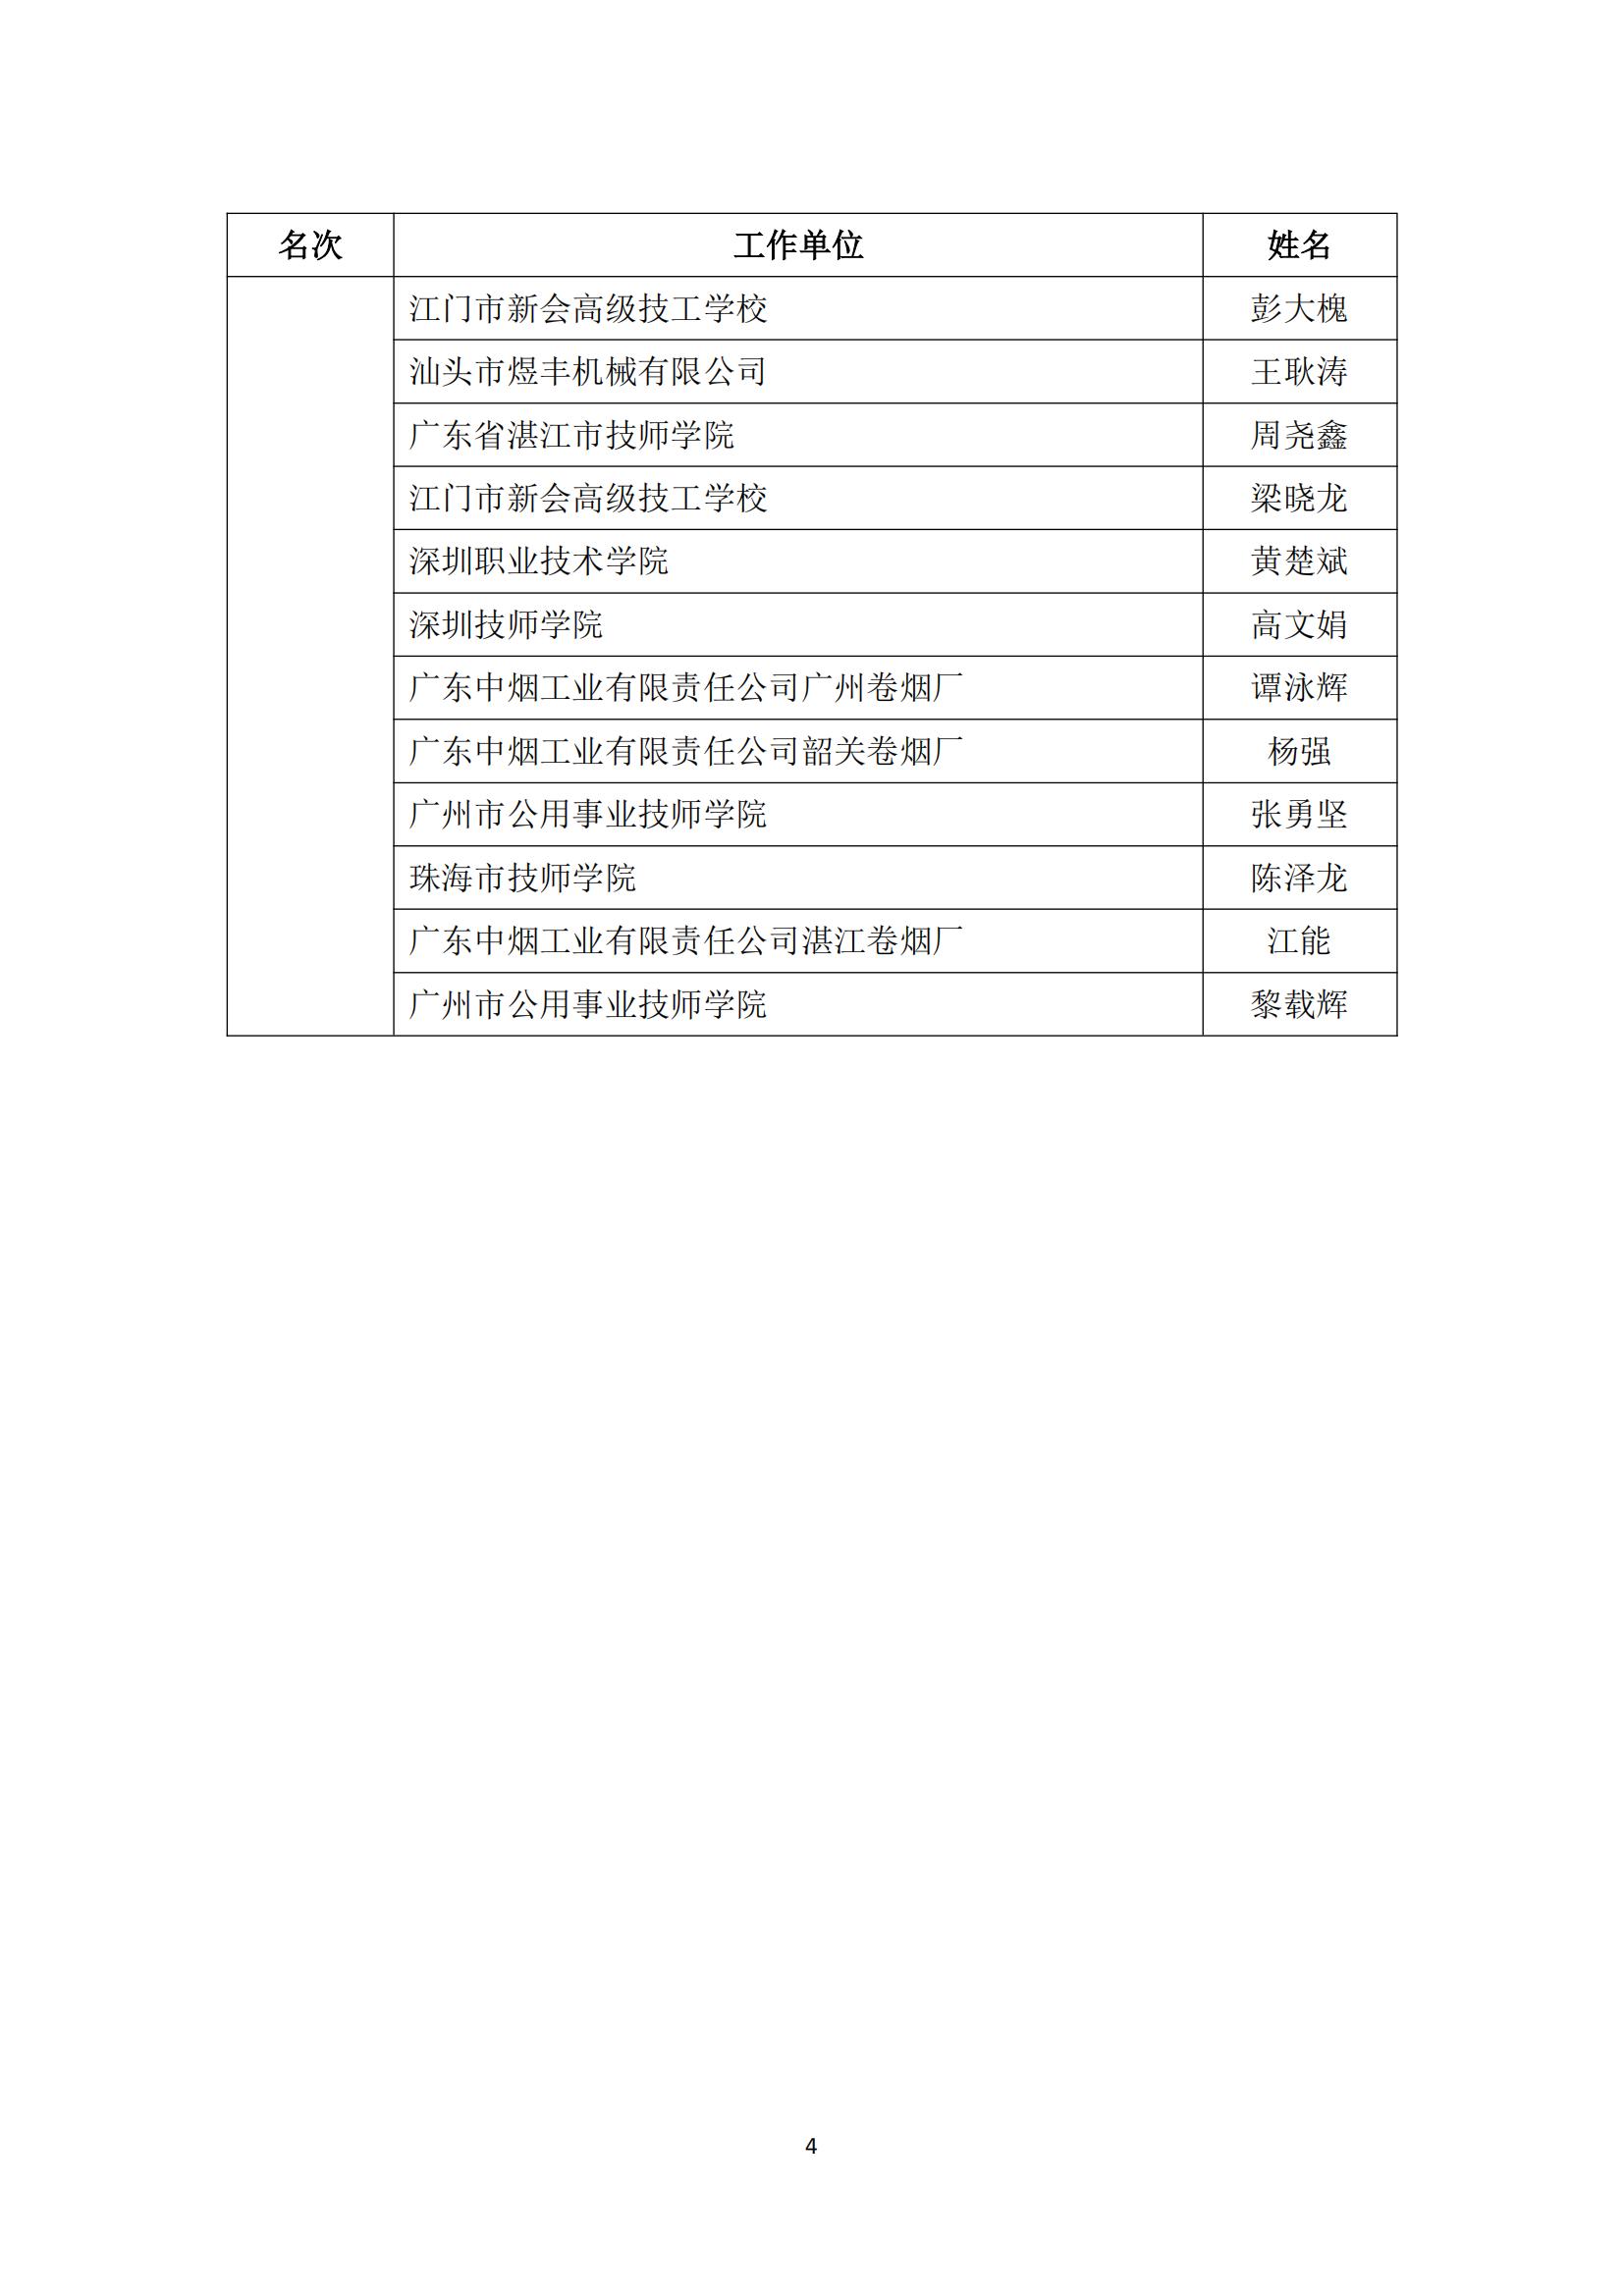 2017 年中国技能大赛——广东省可编程序控制系统设计师（机电一体化）职业技能竞赛_03.jpg